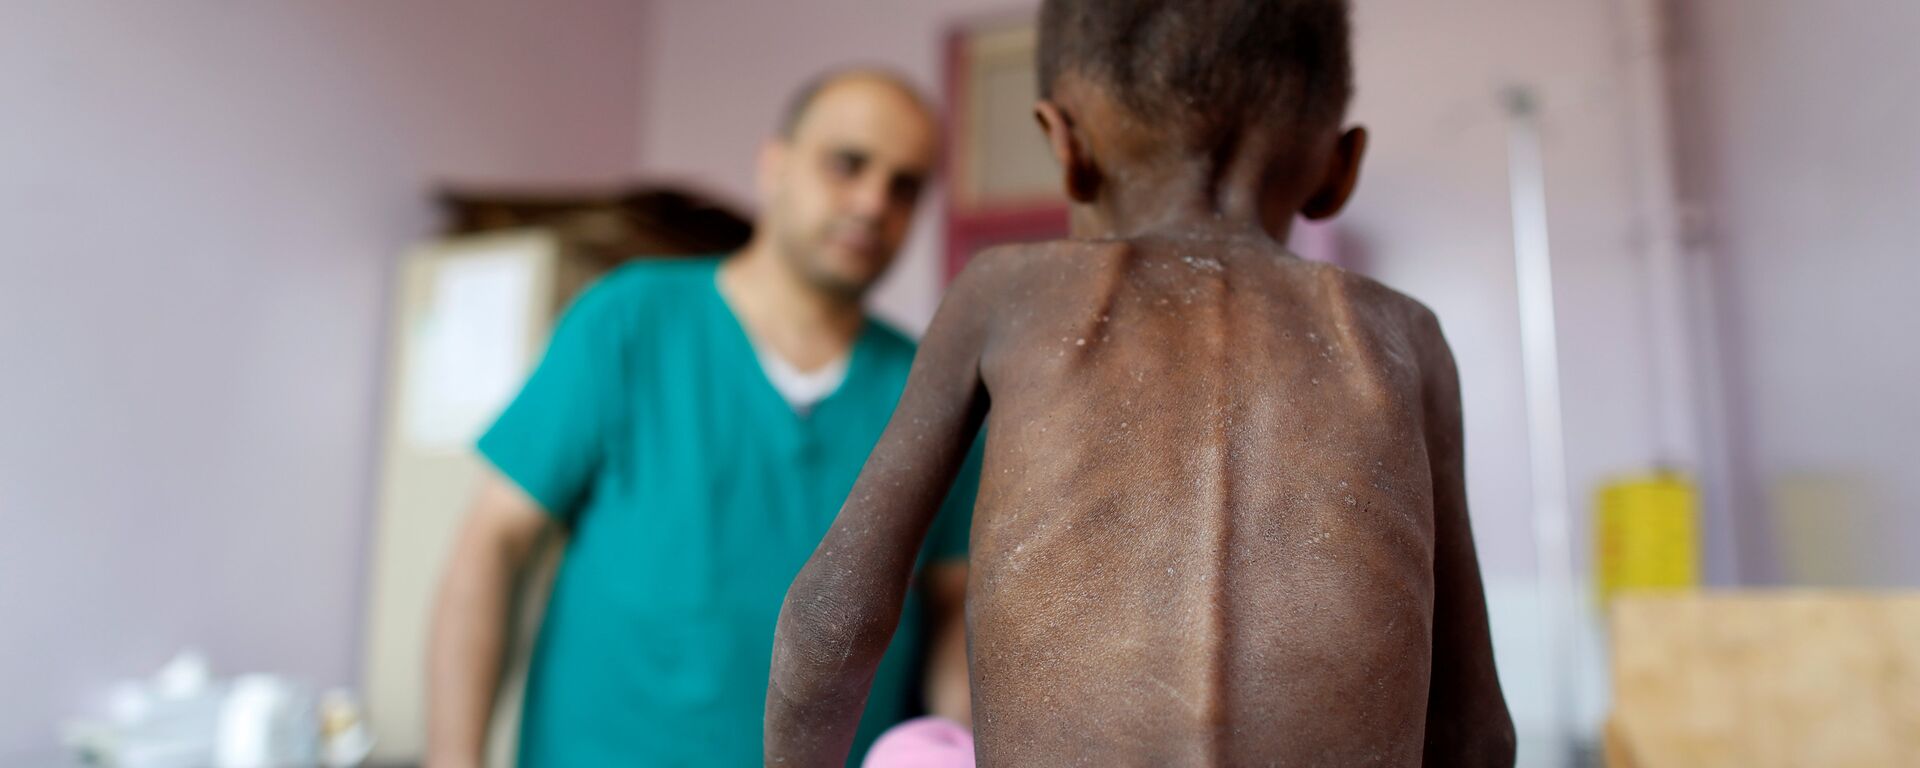 Yemen'de yetersiz beslenme nedeniyle sağlık sorunları yaşayan bir çocuk - Sputnik Türkiye, 1920, 28.10.2020